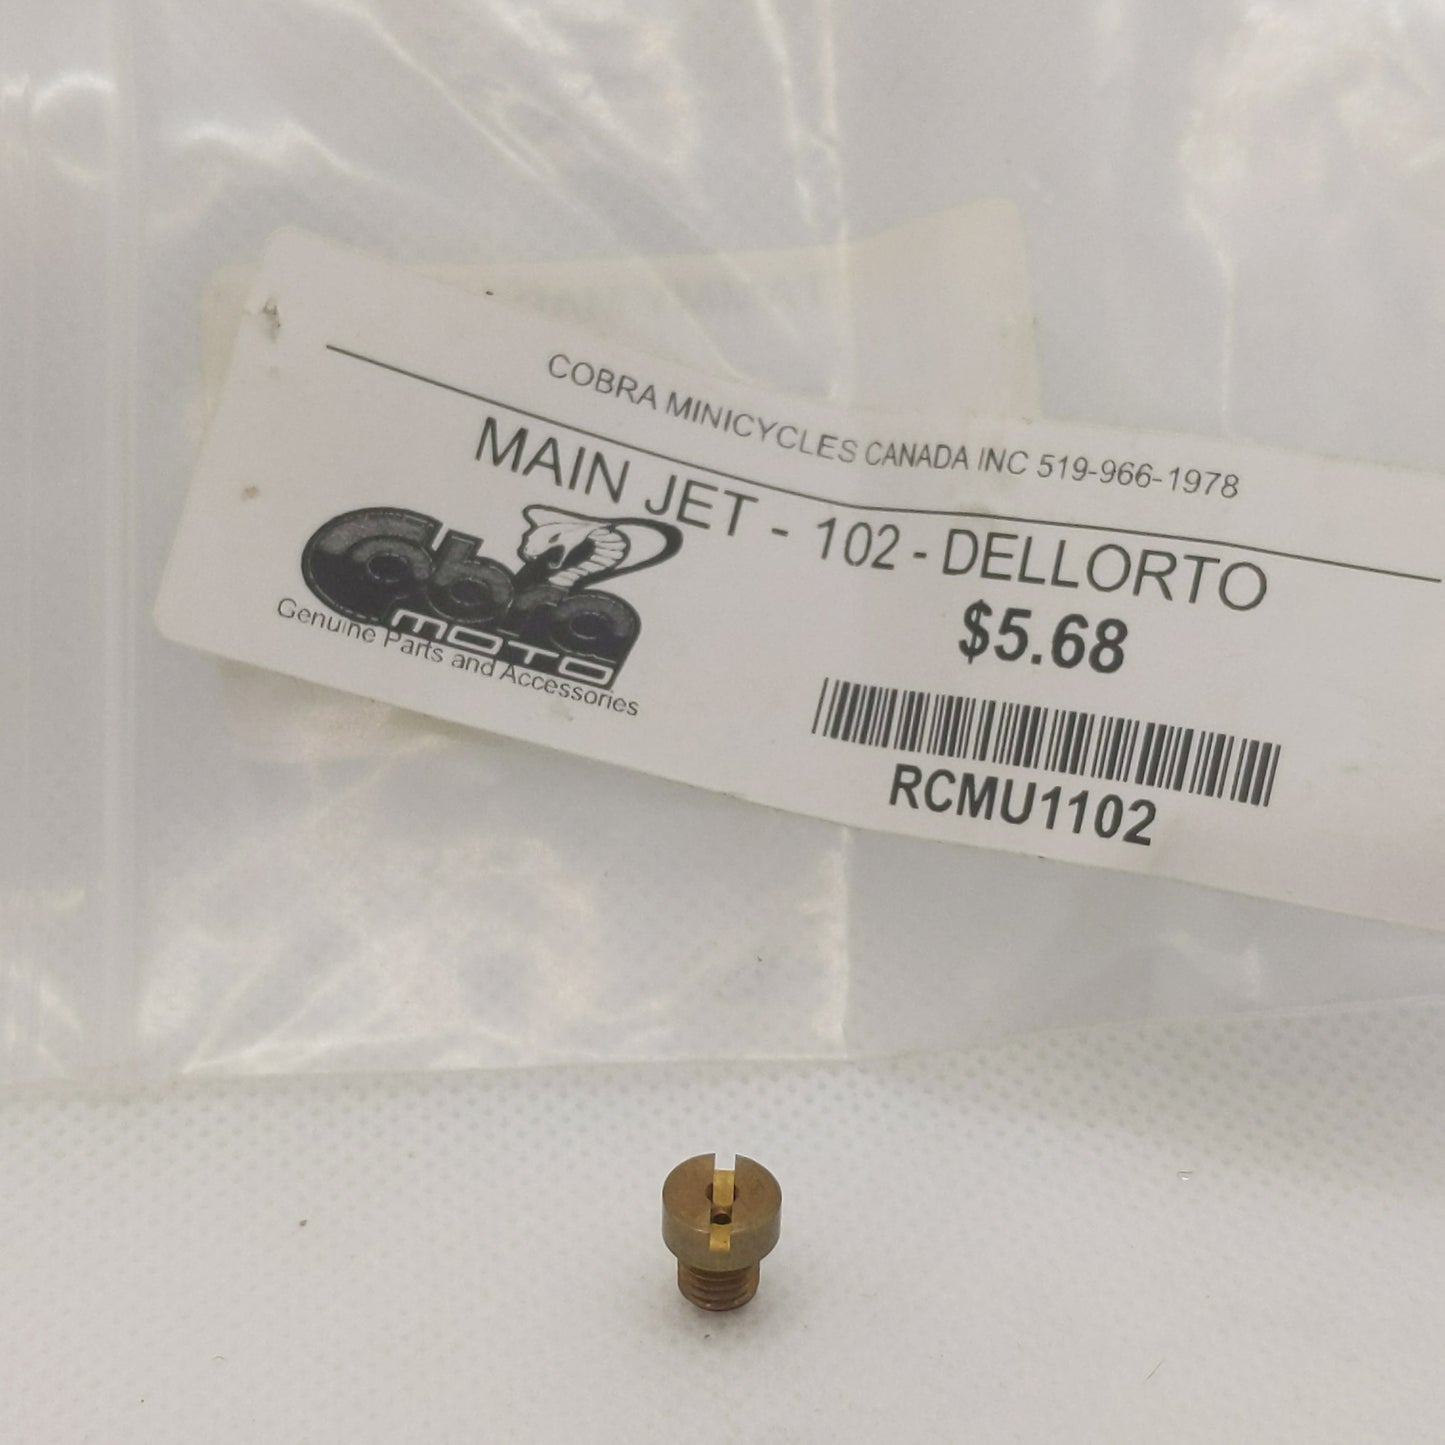 RCMU1102 MAIN JET -102- DELLORTO